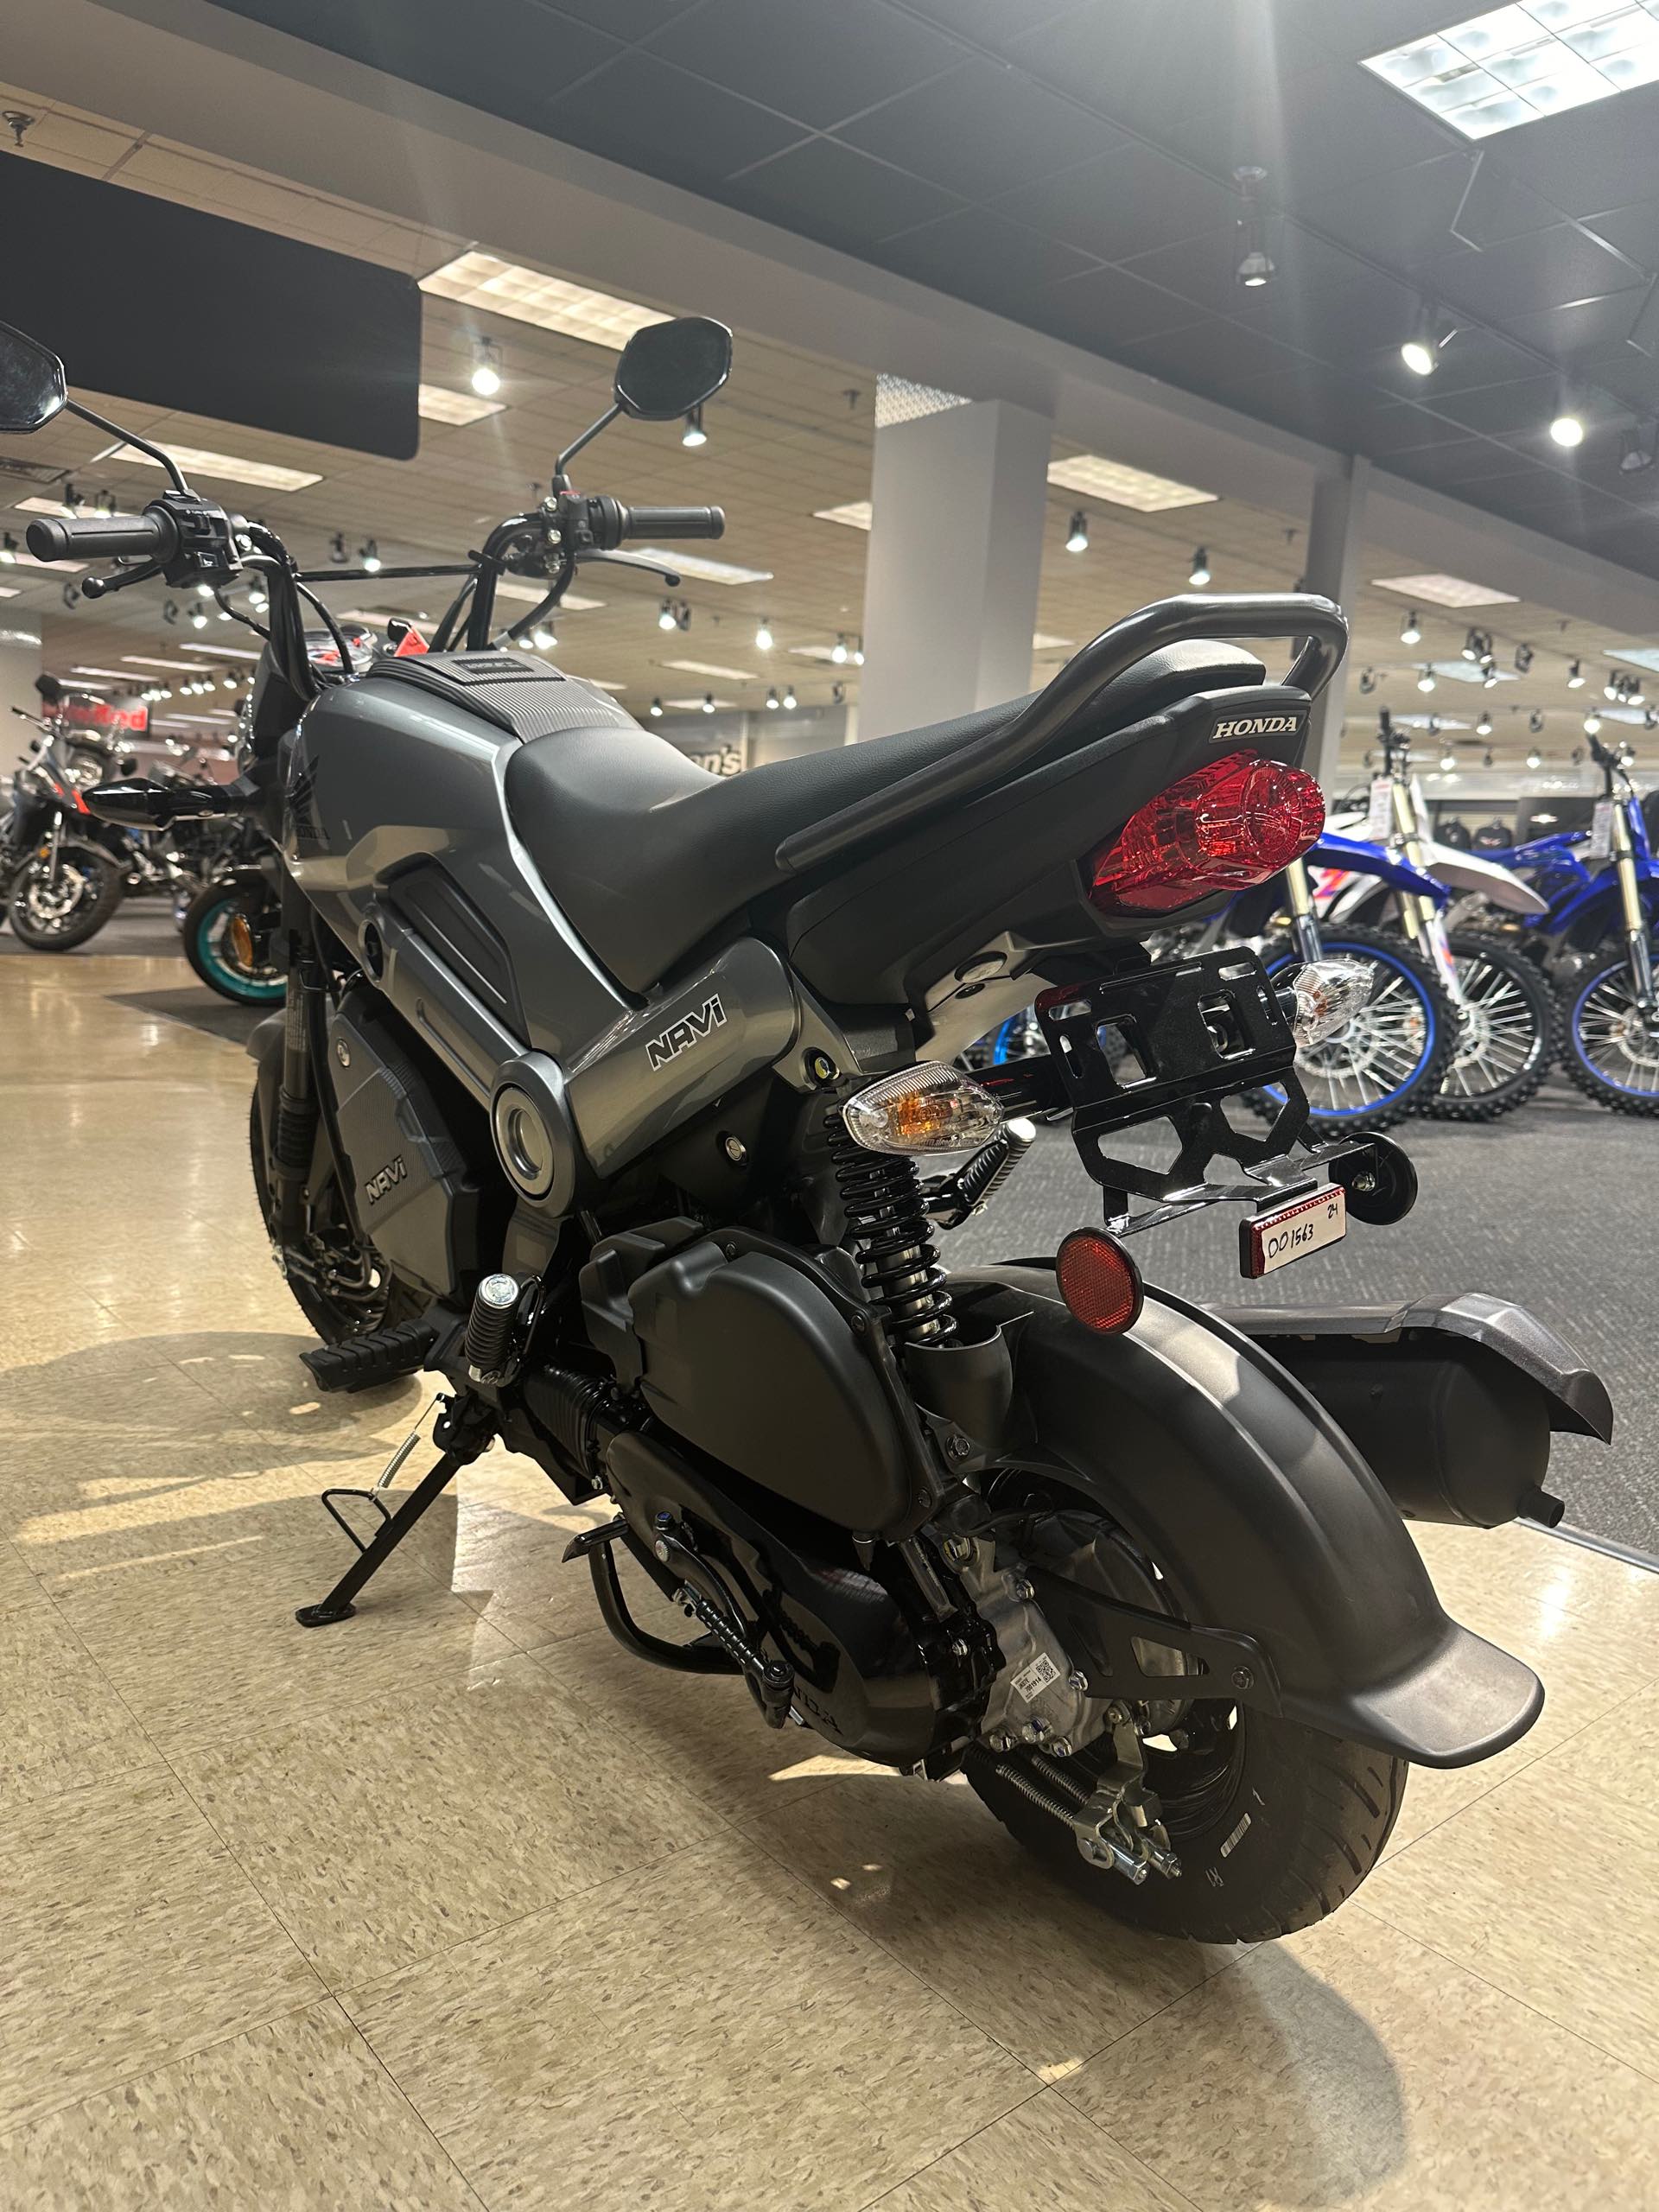 2024 Honda Navi Base at Sloans Motorcycle ATV, Murfreesboro, TN, 37129